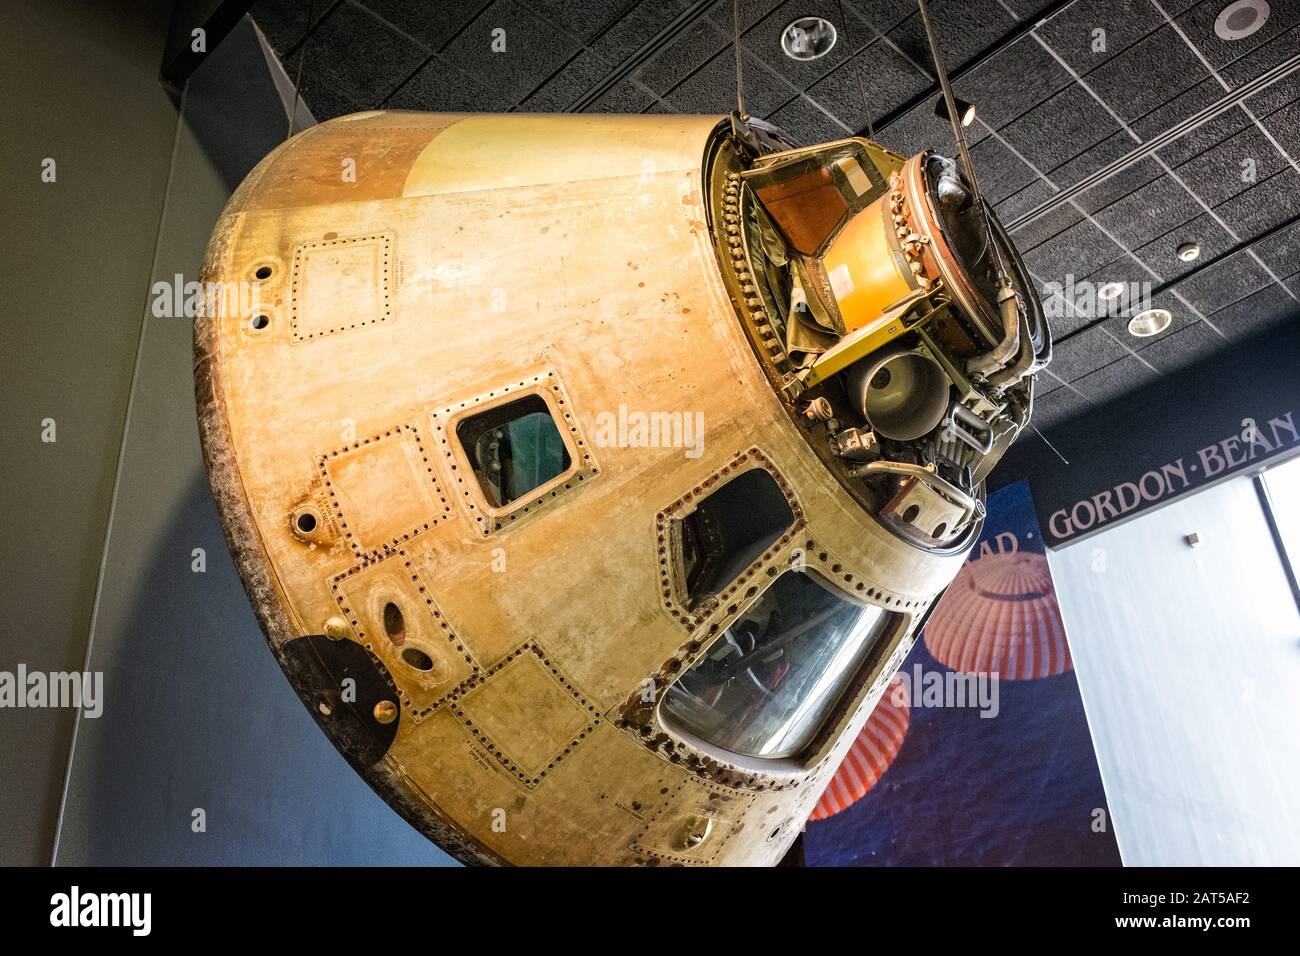 Le module de commande Apollo 11 est exposé au National Air and Space Museum de Washington D.C. Banque D'Images